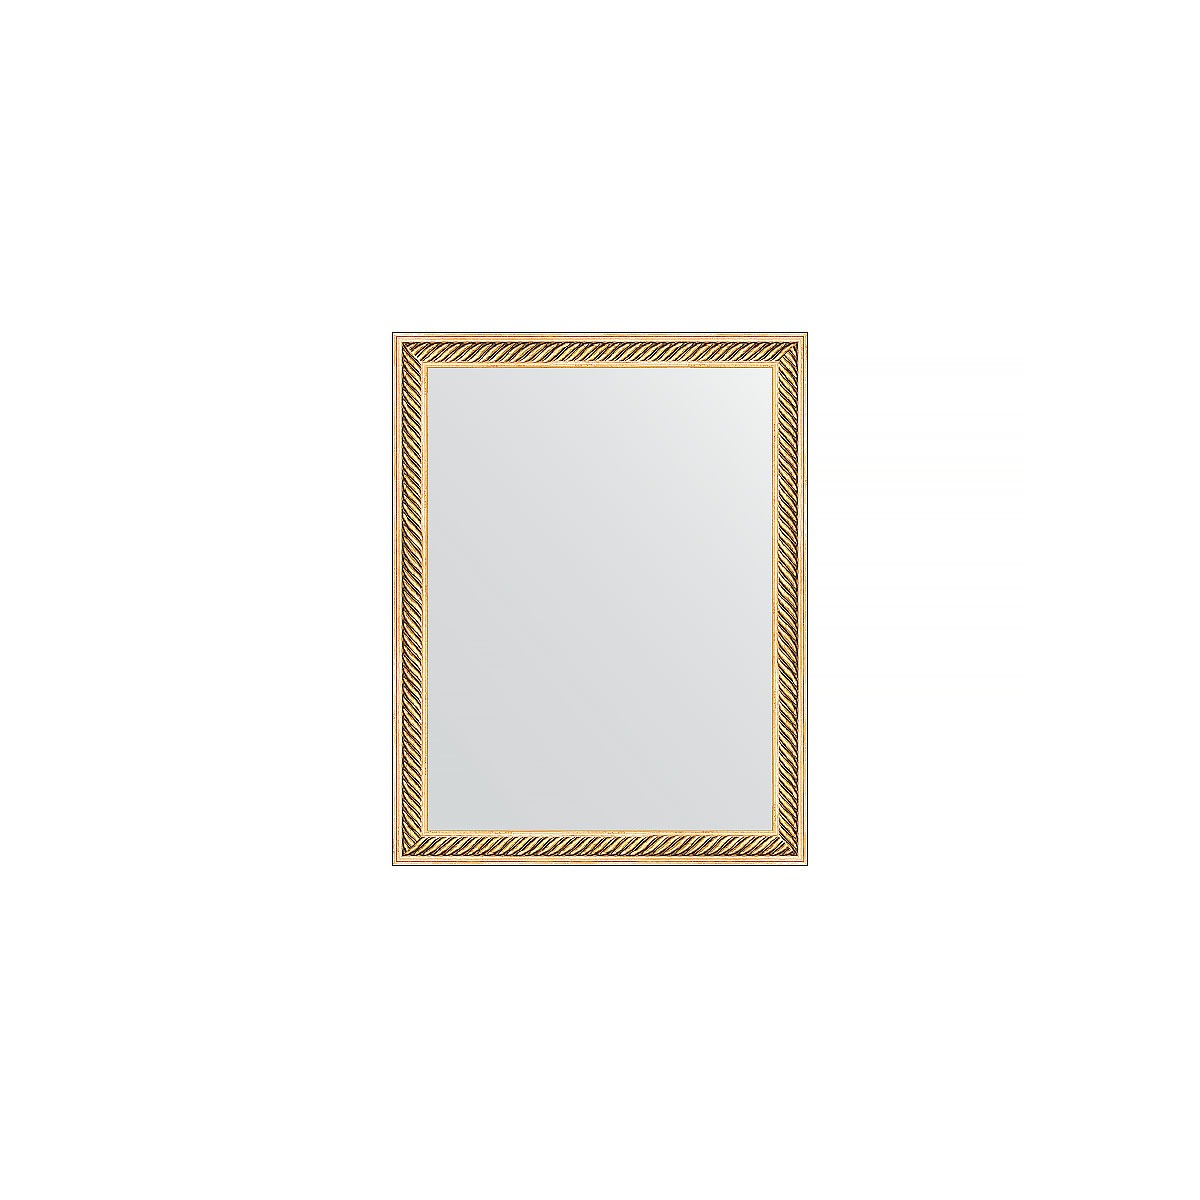 Зеркало в багетной раме Evoform витое золото 28 мм 35х45 см зеркало mixline магнат 35х45 золото 4630104800907